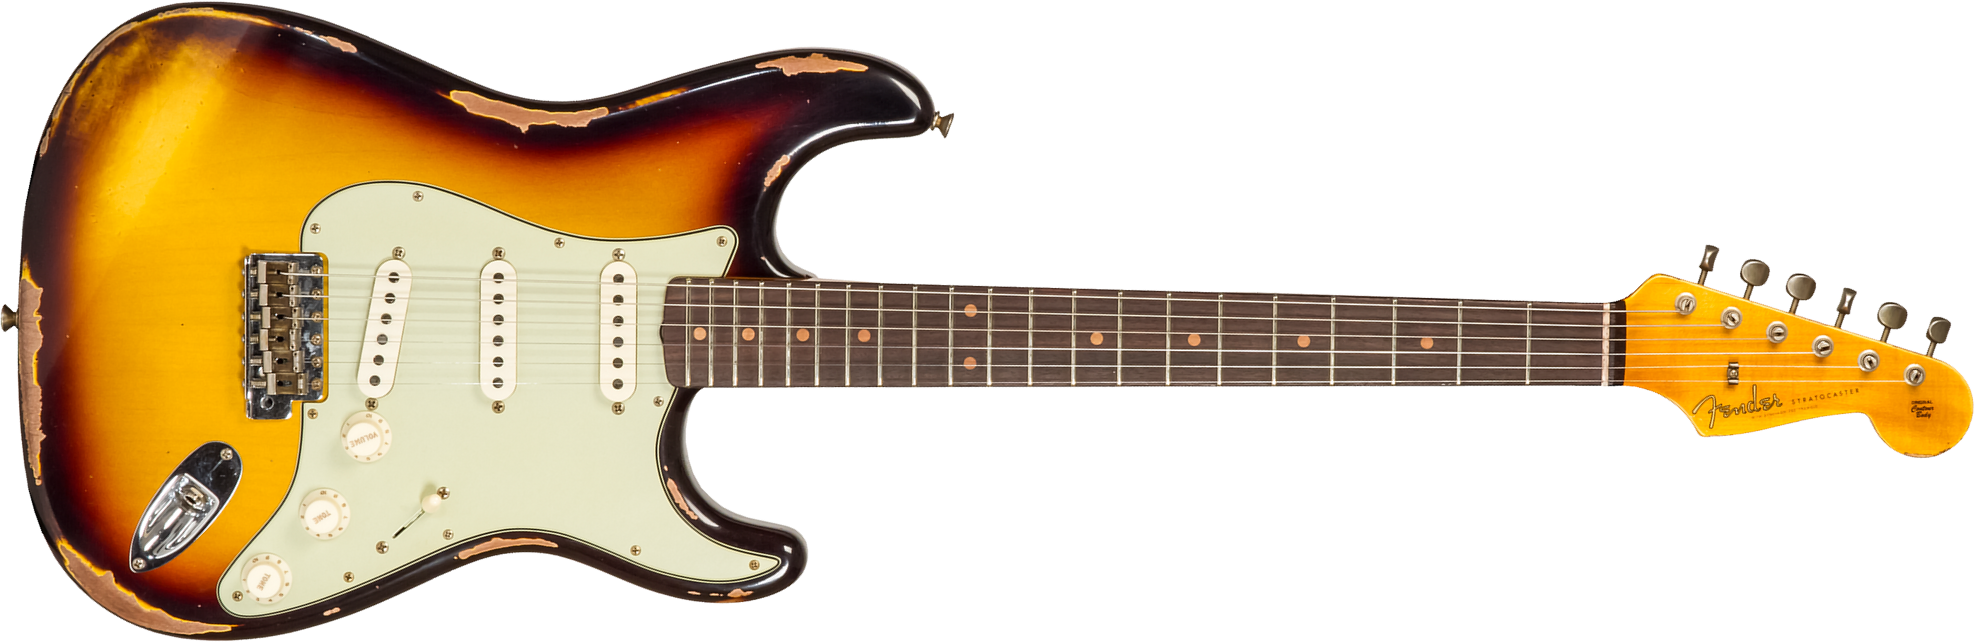 Fender Custom Shop Strat 1961 3s Trem Rw #cz573663 - Heavy Relic Aged 3-color Sunburst - Str shape electric guitar - Main picture